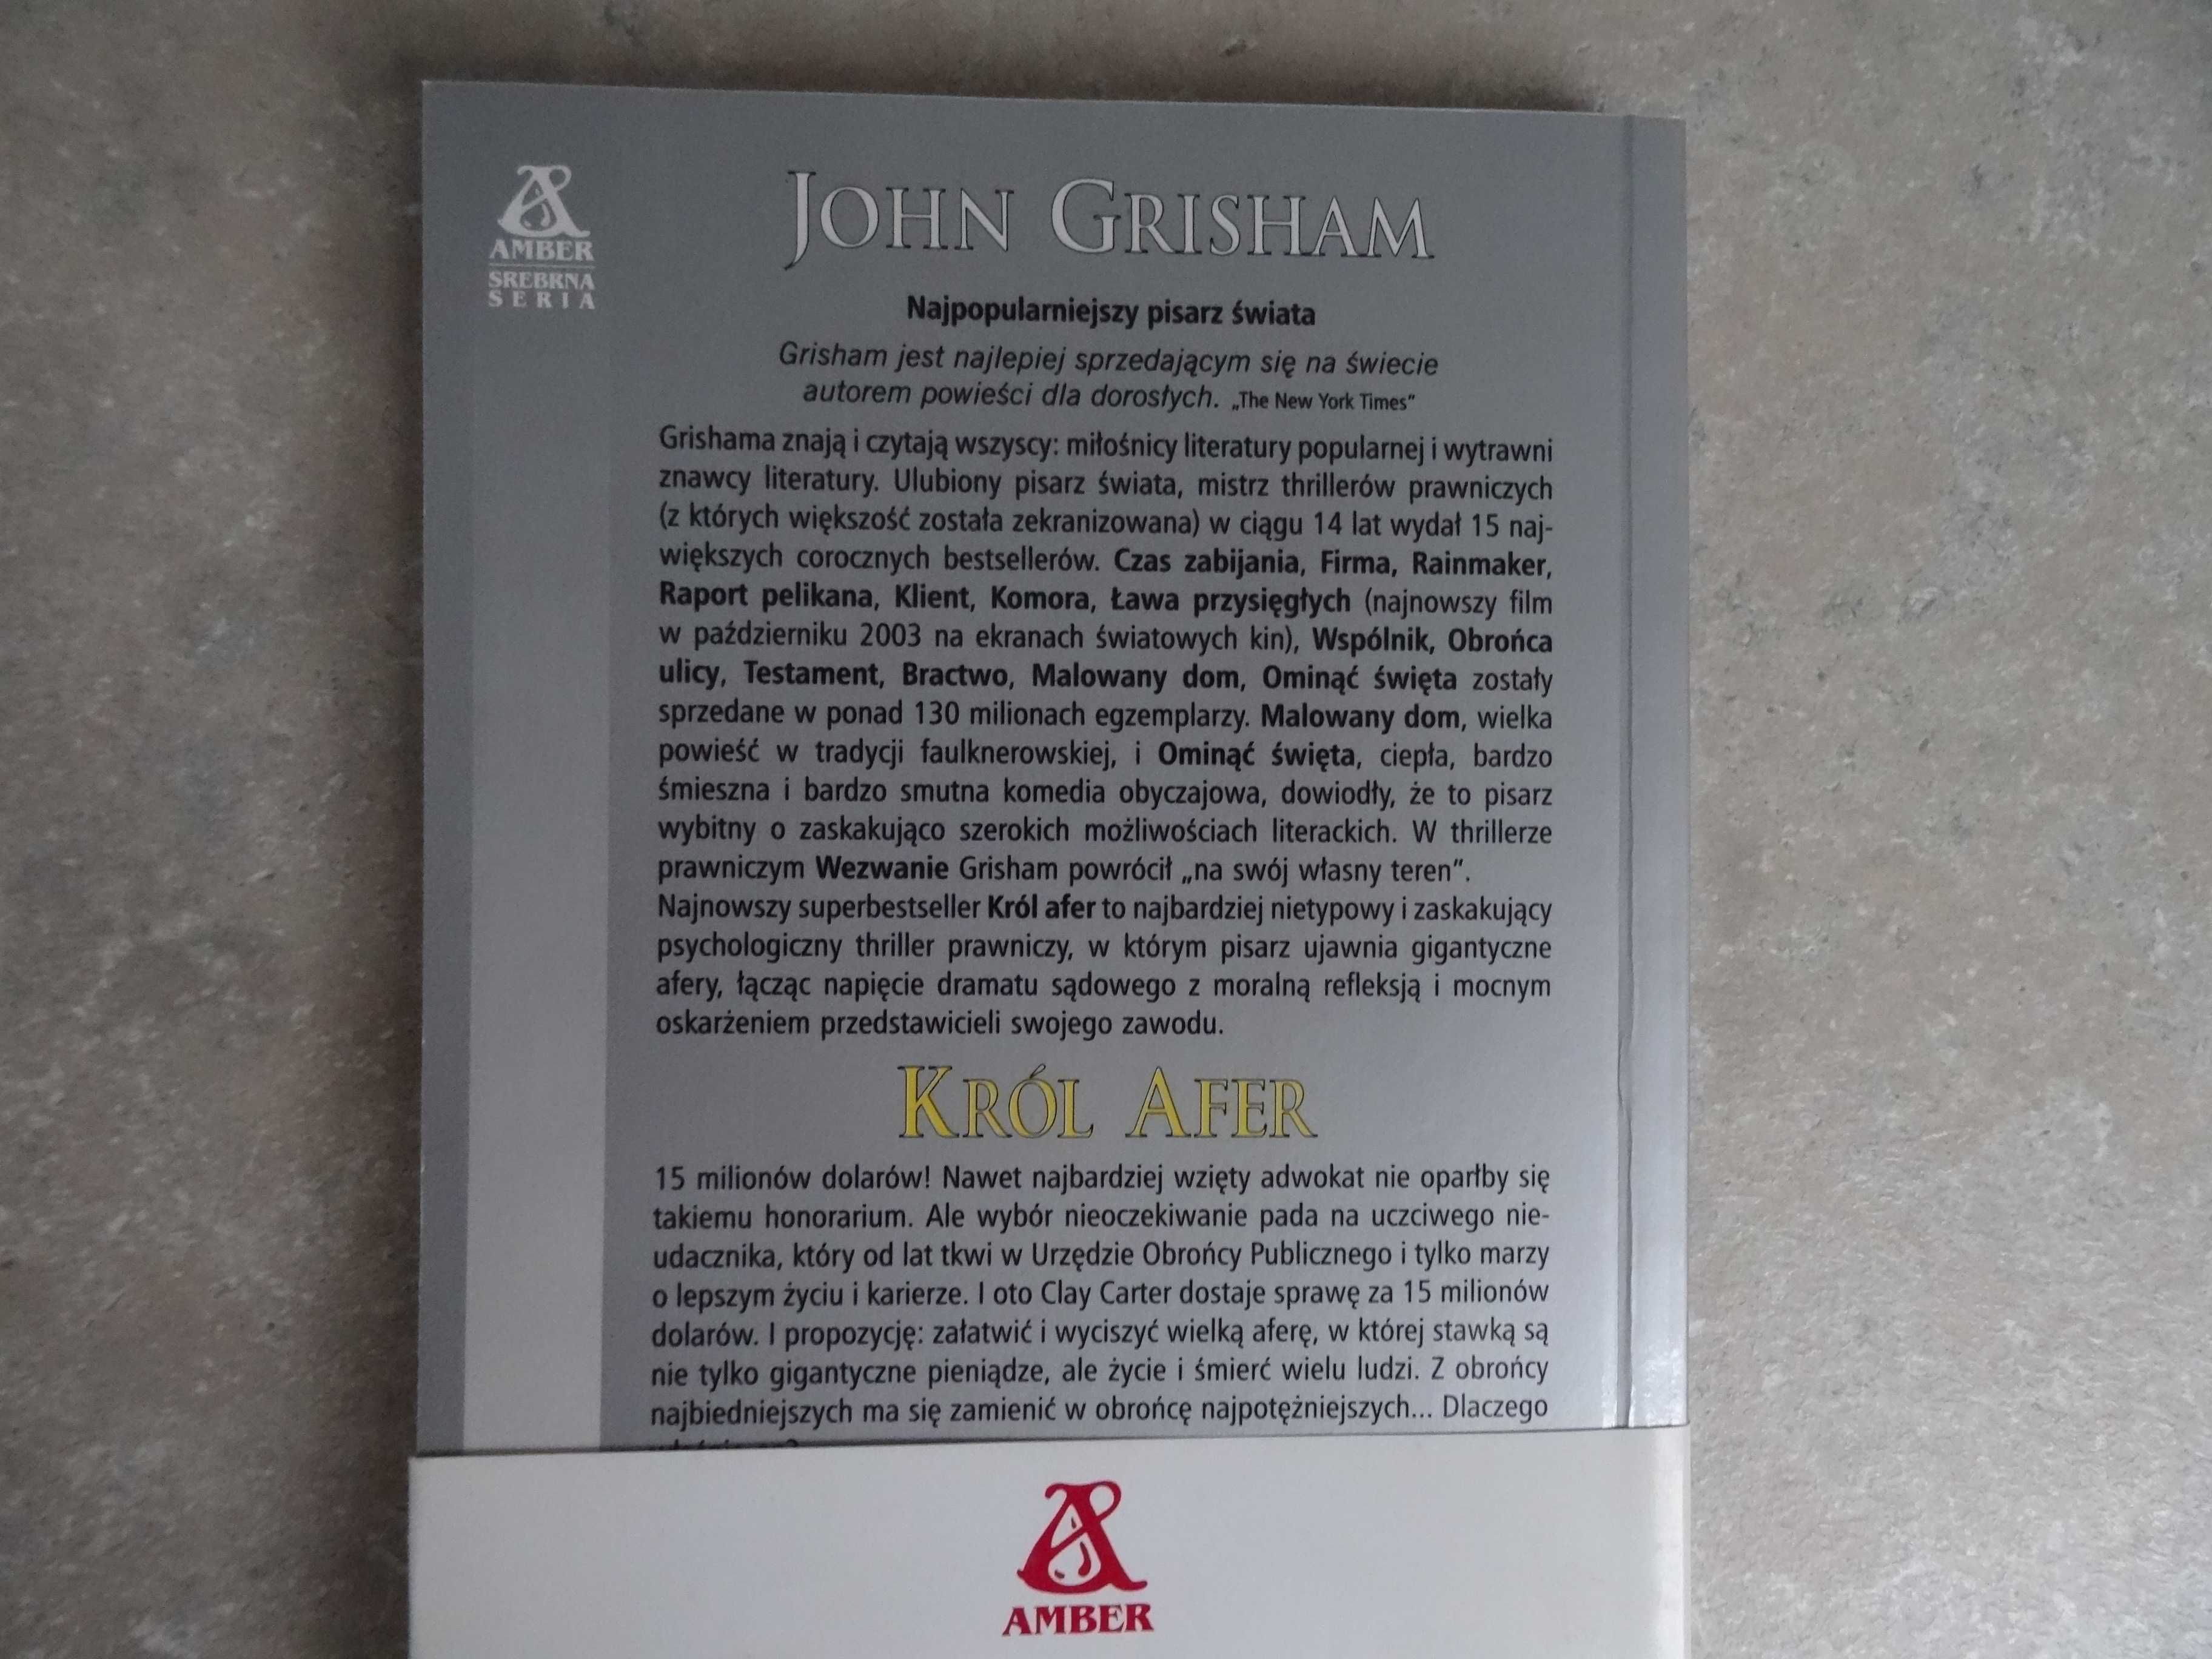 John Grisham "Król afer"